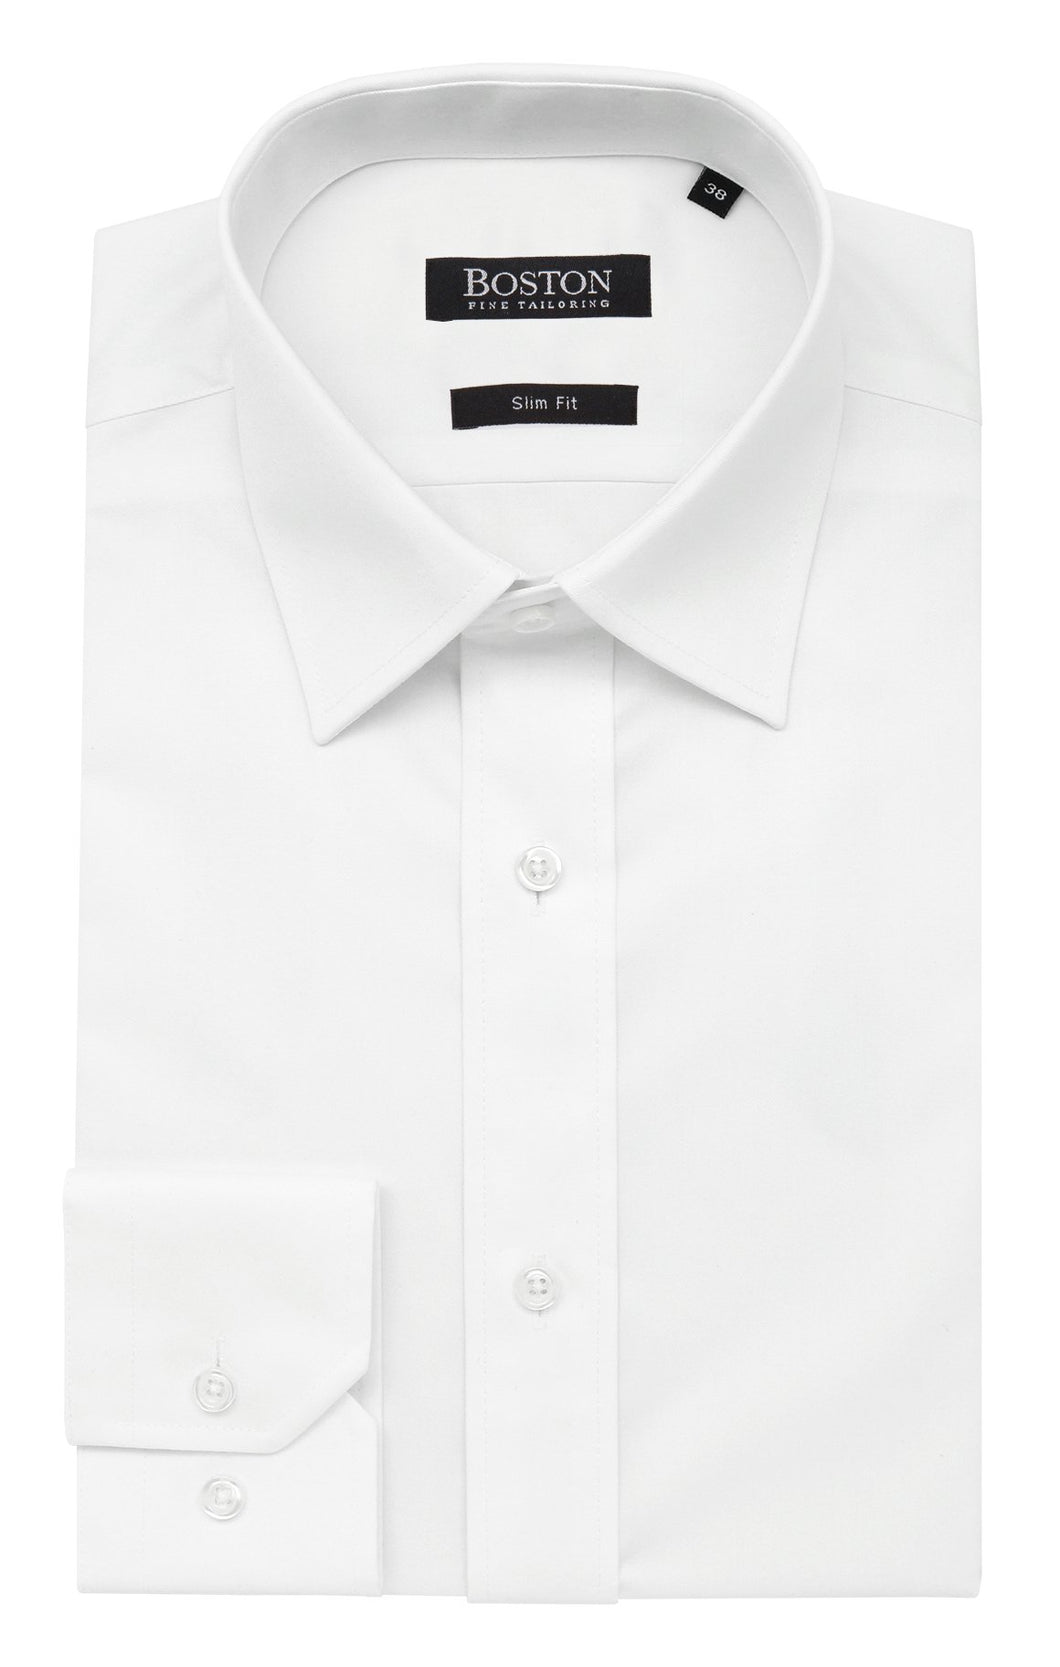 Boston Liberty L/S Shirt (White)